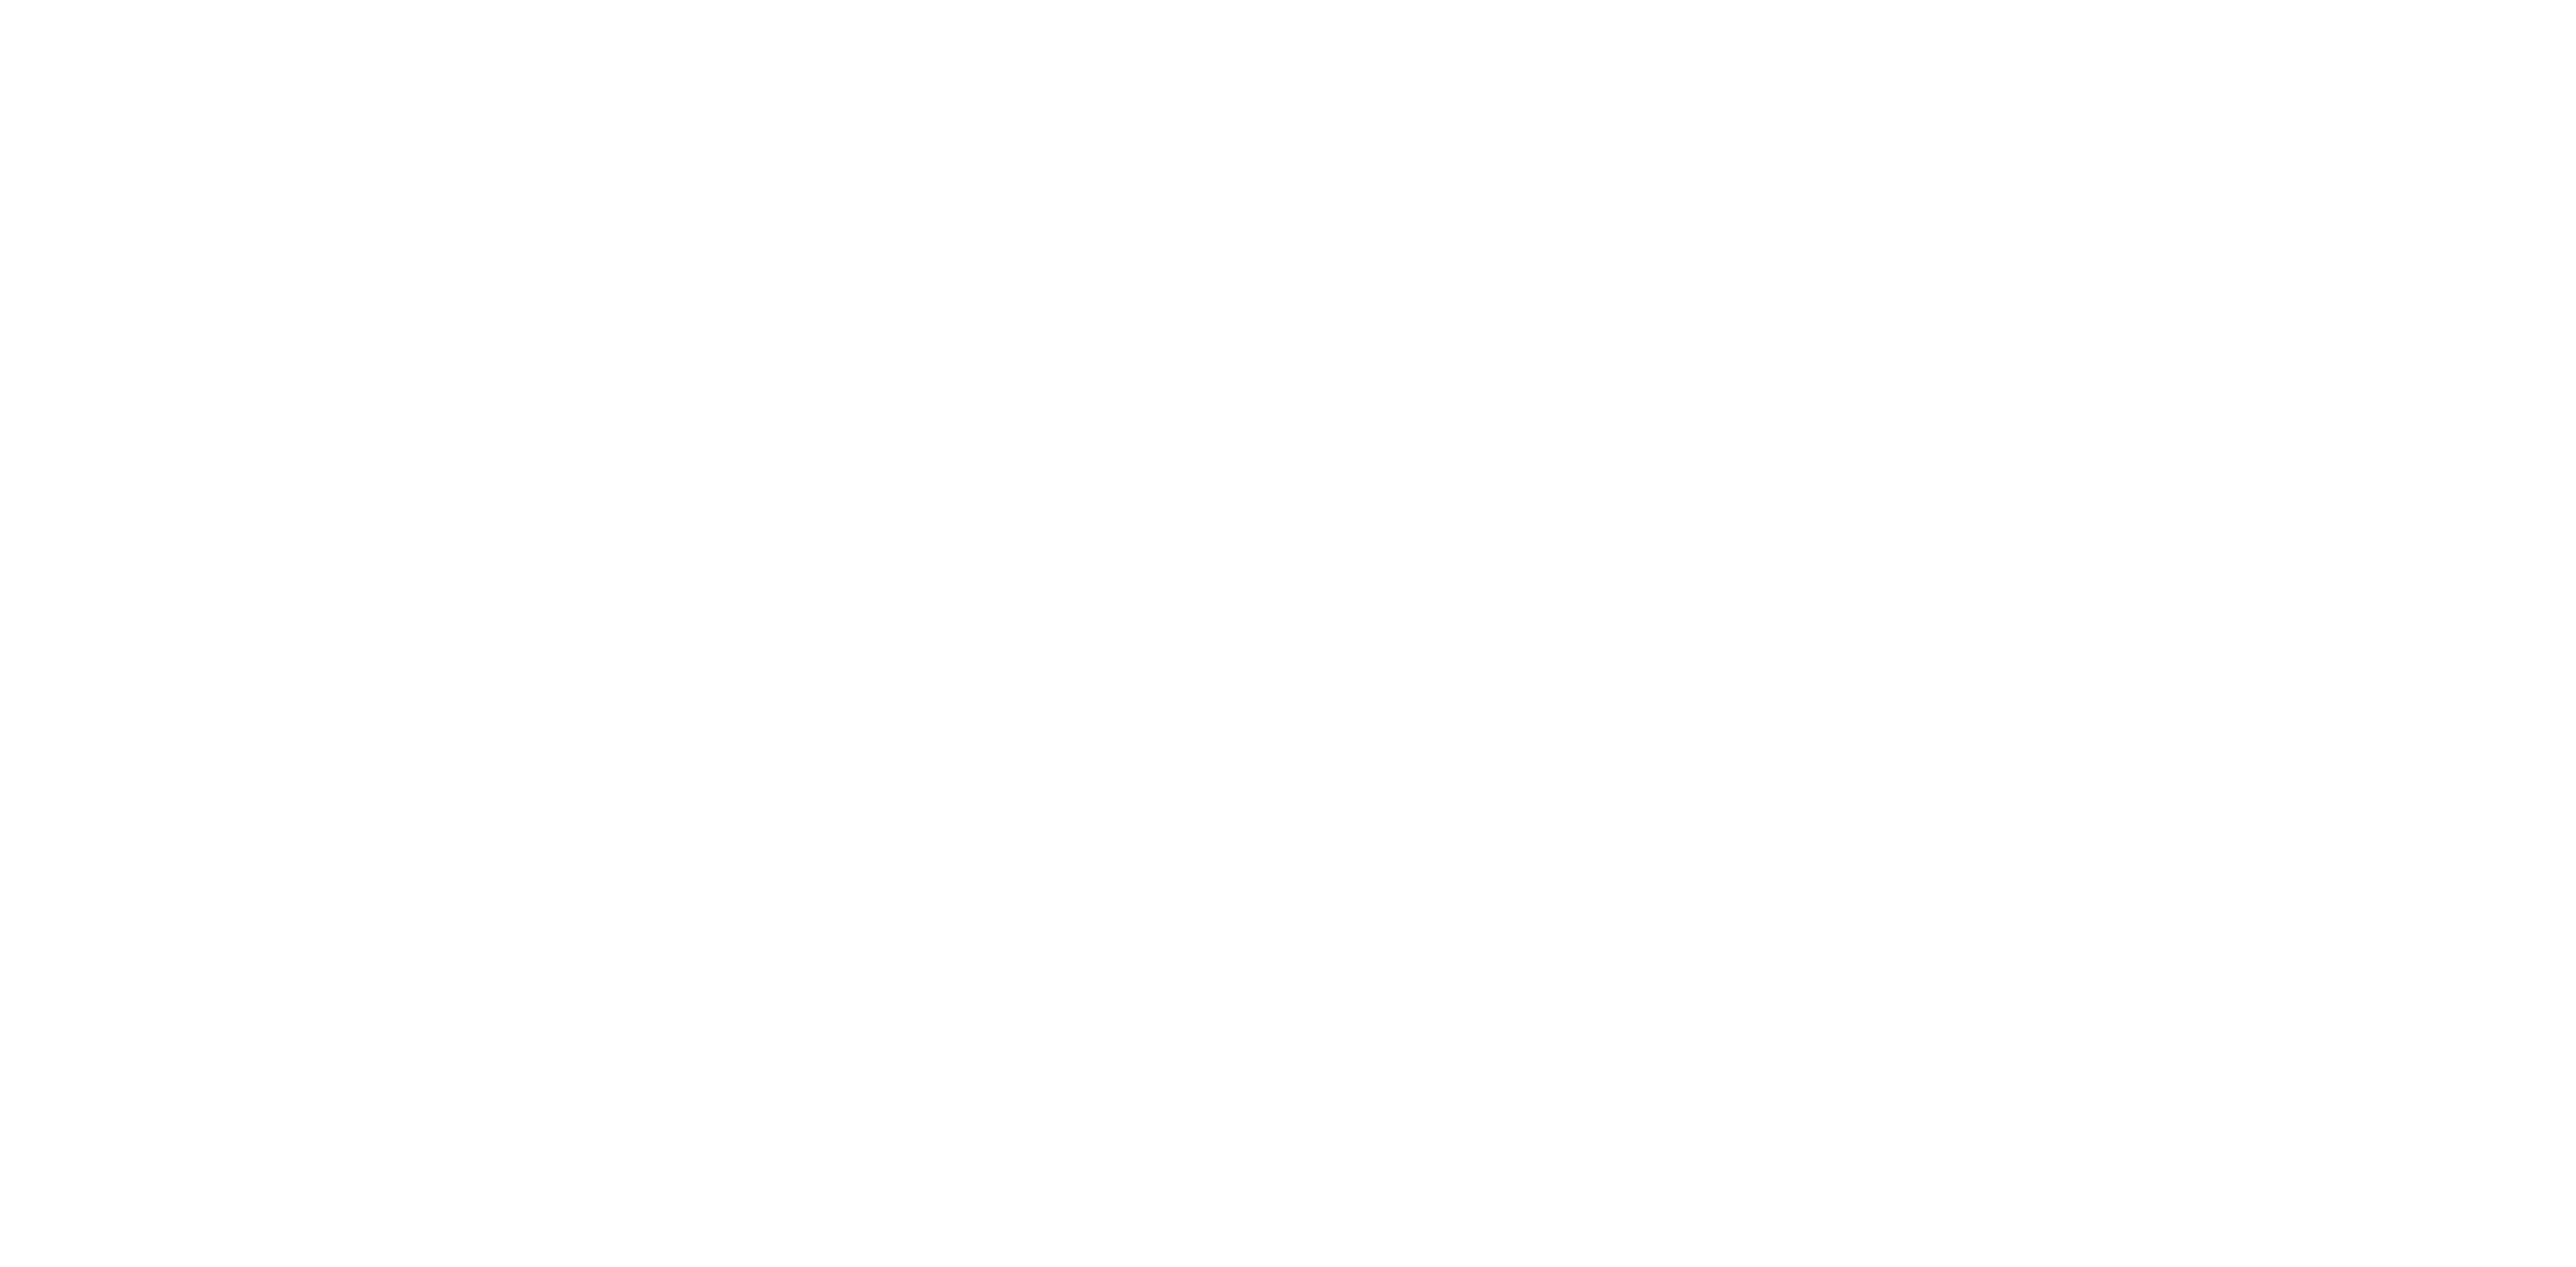 100 Days of Optimism